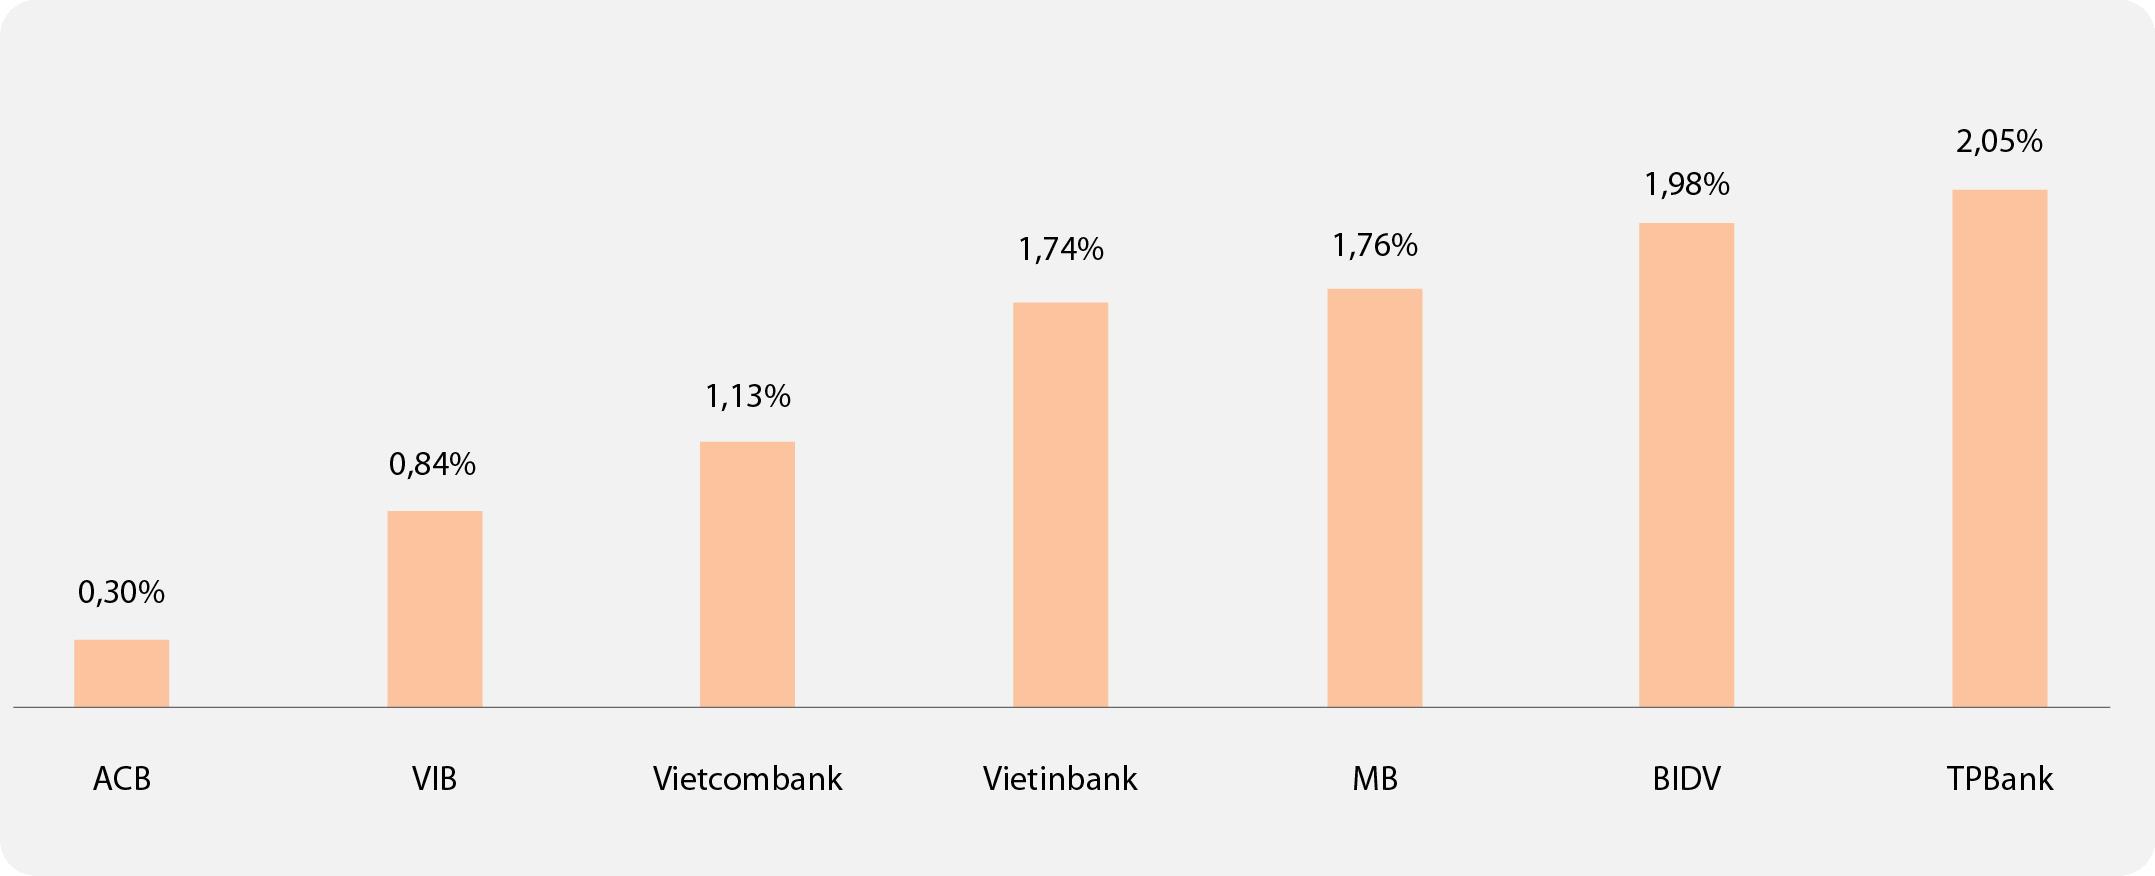 Biểu đồ: Tỷ lệ chi phí tín dụng trên dư nợ (4 quý gần nhất). Nguồn: Fiinpro, Báo cáo tài chính các ngân hàng.